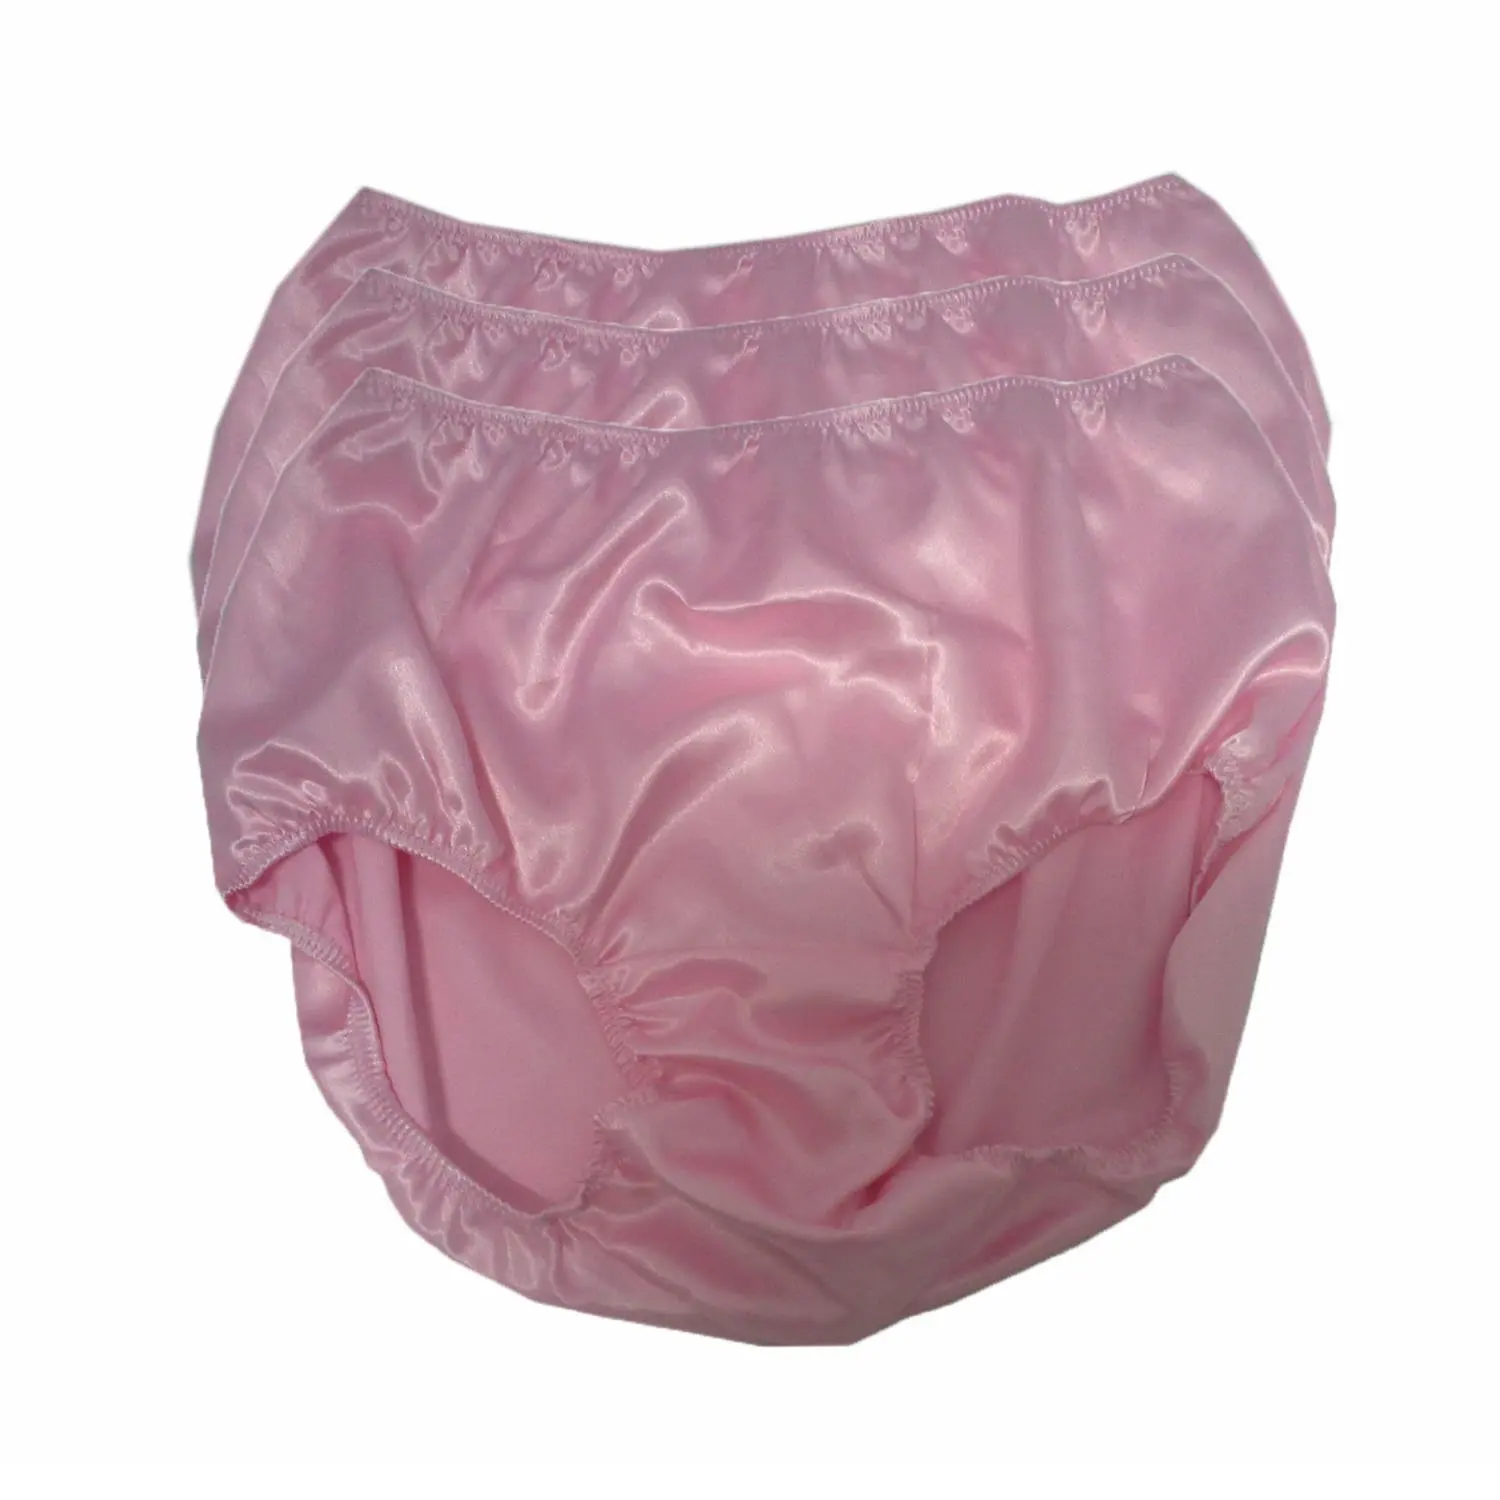 Cheap Pink Satin Panties Find Pink Satin Panties Deals On Line At